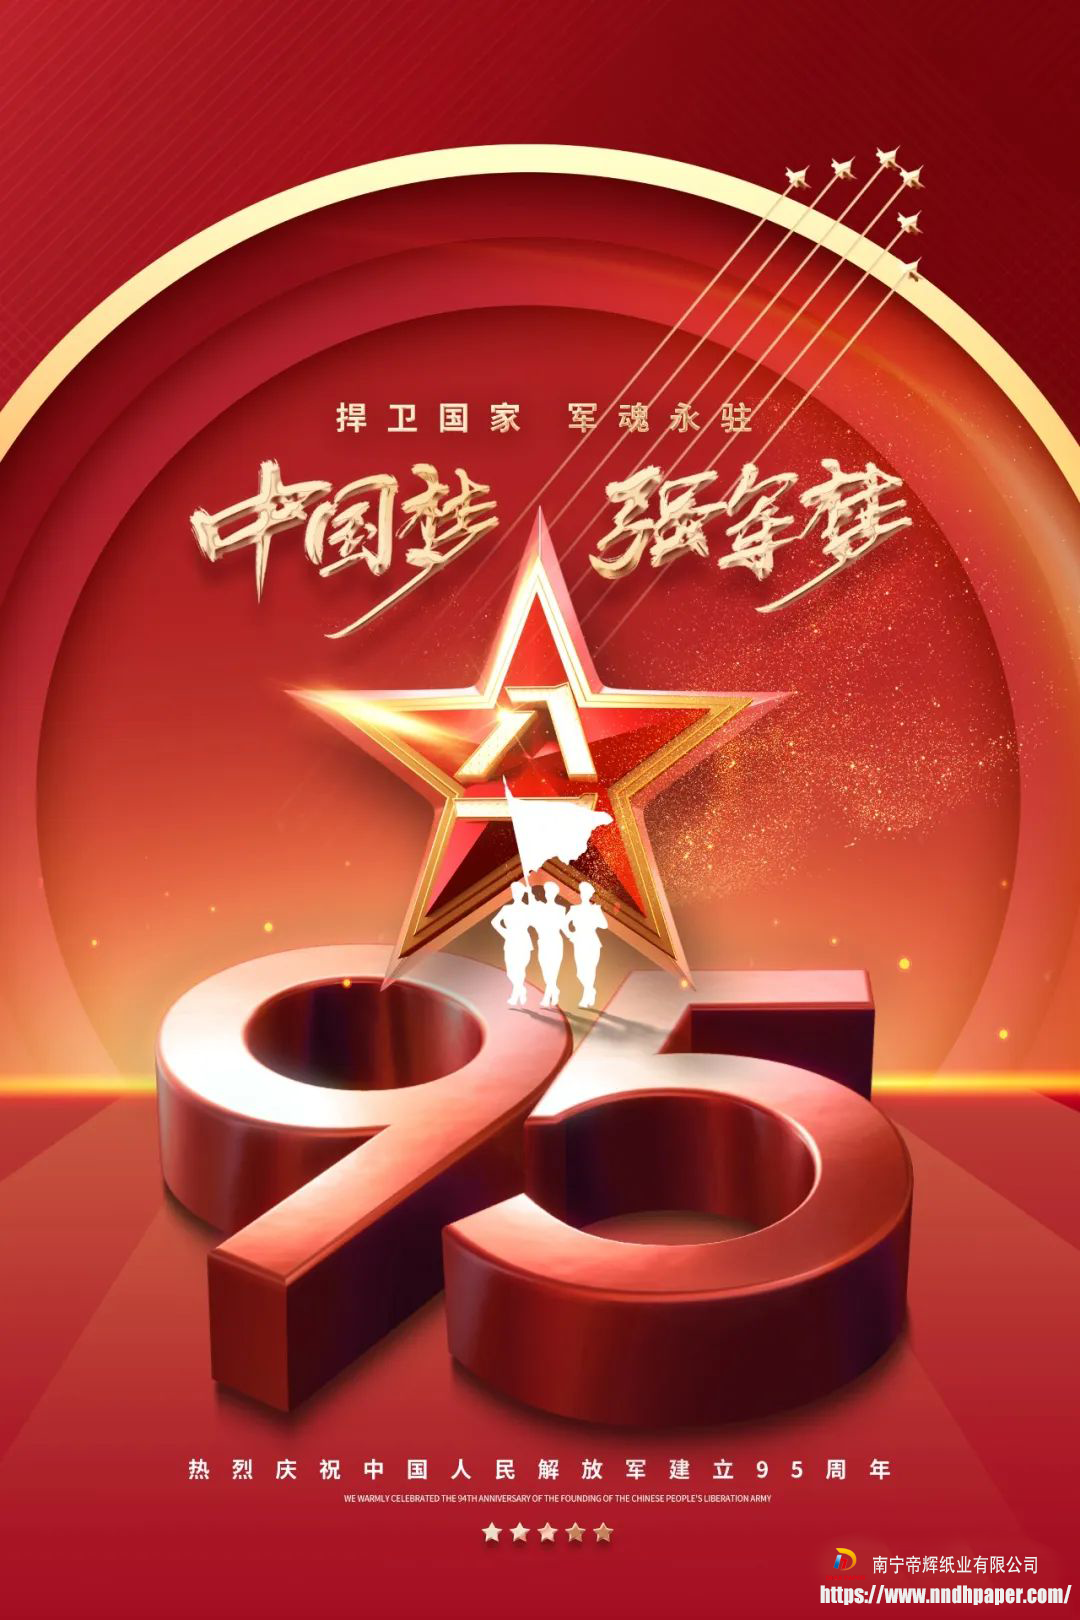 ဩဂုတ်လ 1 ရက်နေ့ တပ်မတော်နေ့တွင် တရုတ်စစ်တပ်အား ဂုဏ်ပြုကြိုဆိုပါသည်။ချစ်စရာအကောင်းဆုံးလူကို ဂုဏ်ပြုပါသည်။